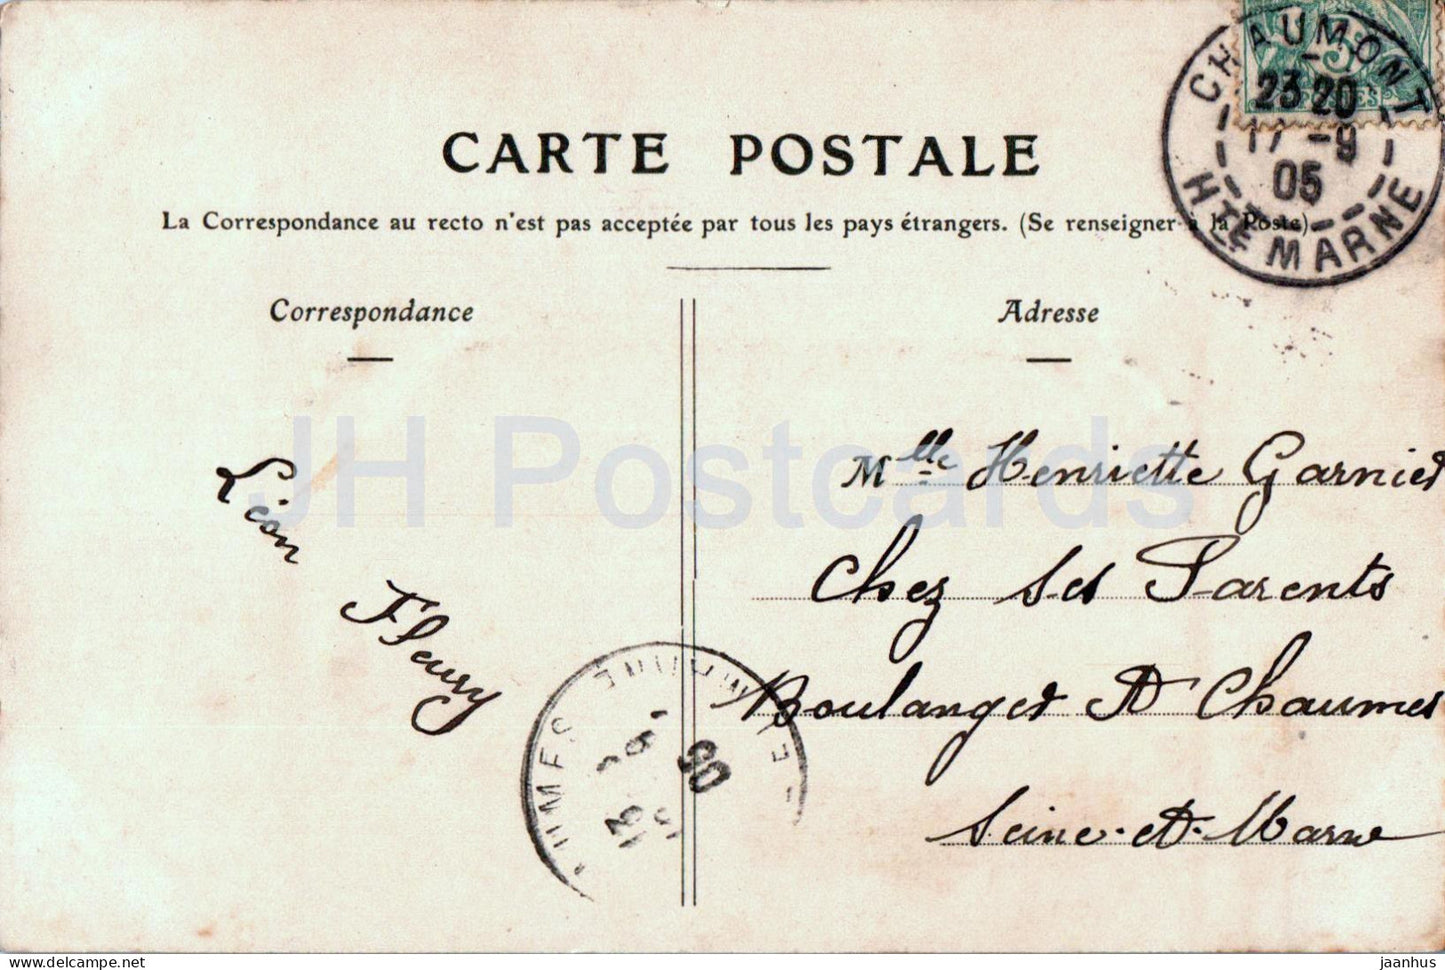 Souvenir Chaumont - alte Postkarte - 1905 - Frankreich - gebraucht 